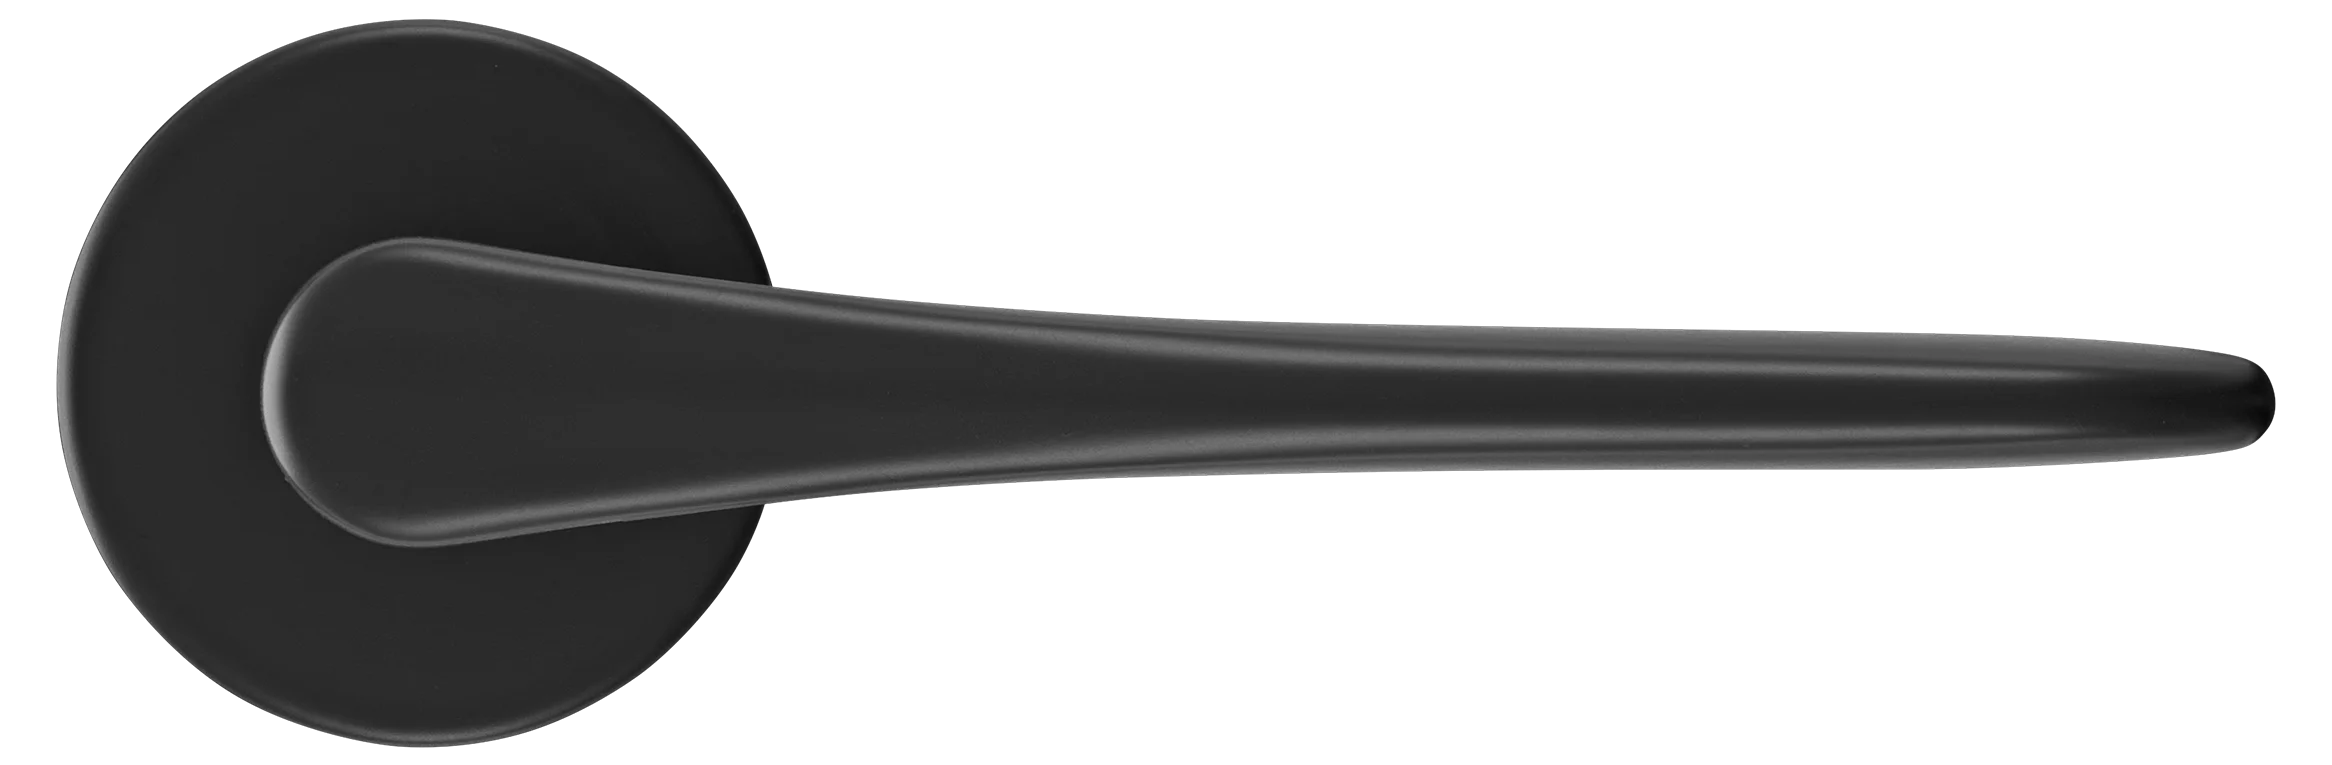 AULA R5 NERO, ручка дверная на розетке 7мм, цвет -  черный фото купить в Волгограде